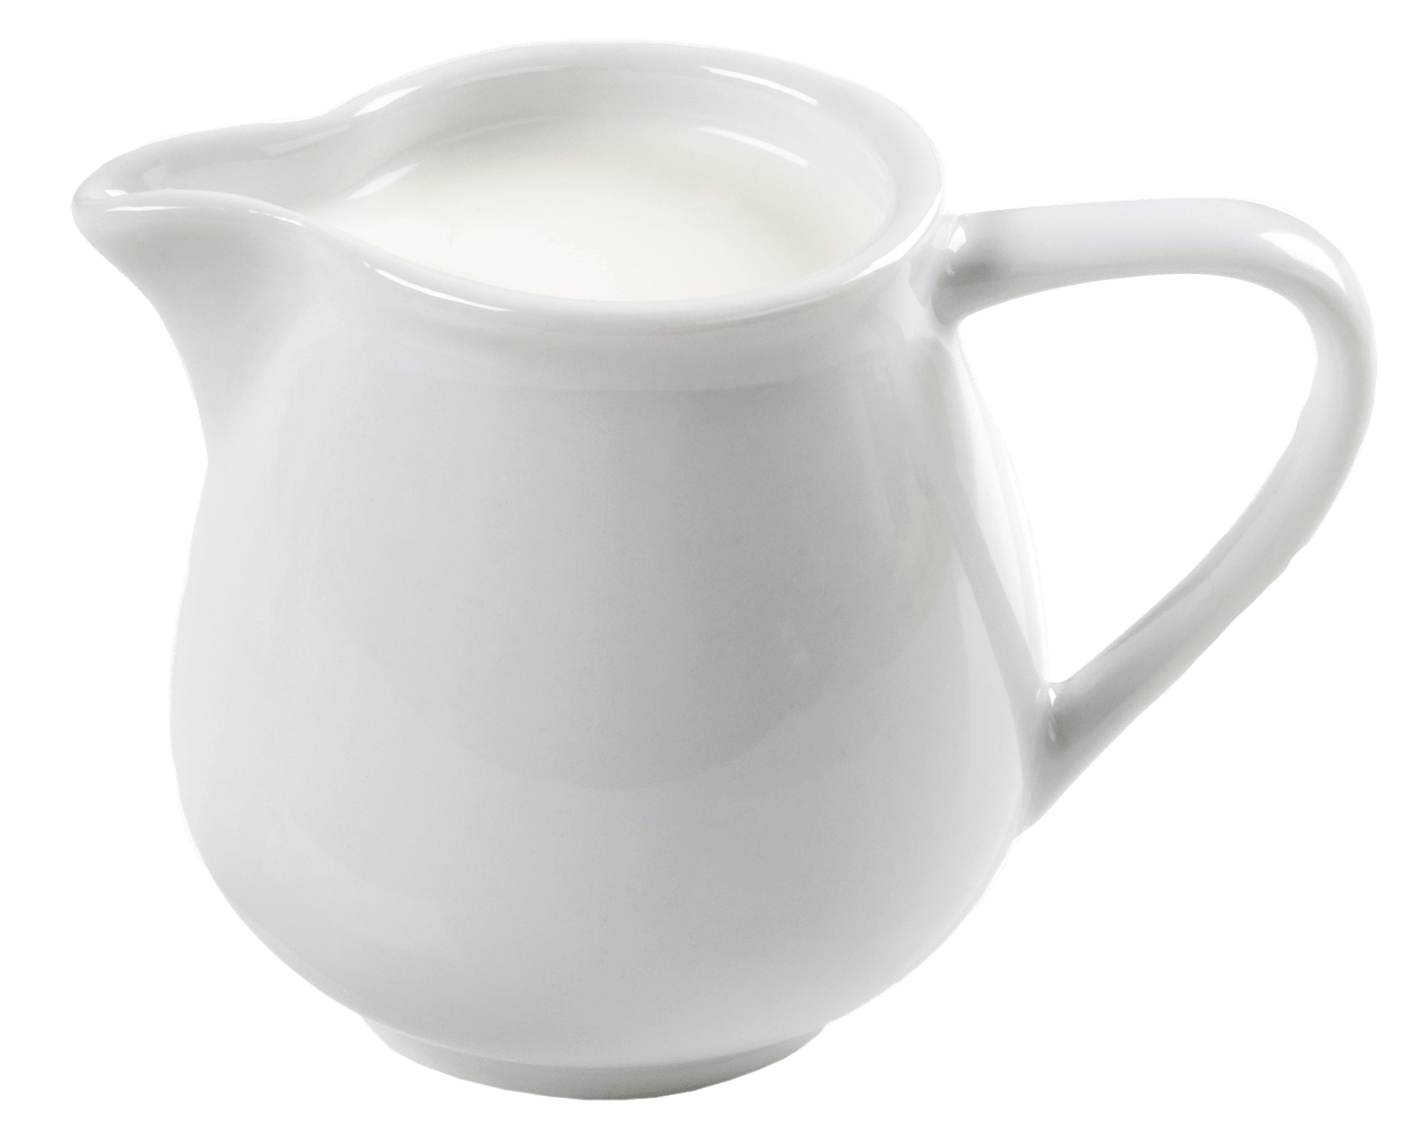 Heavy cream in a ceramic creamer